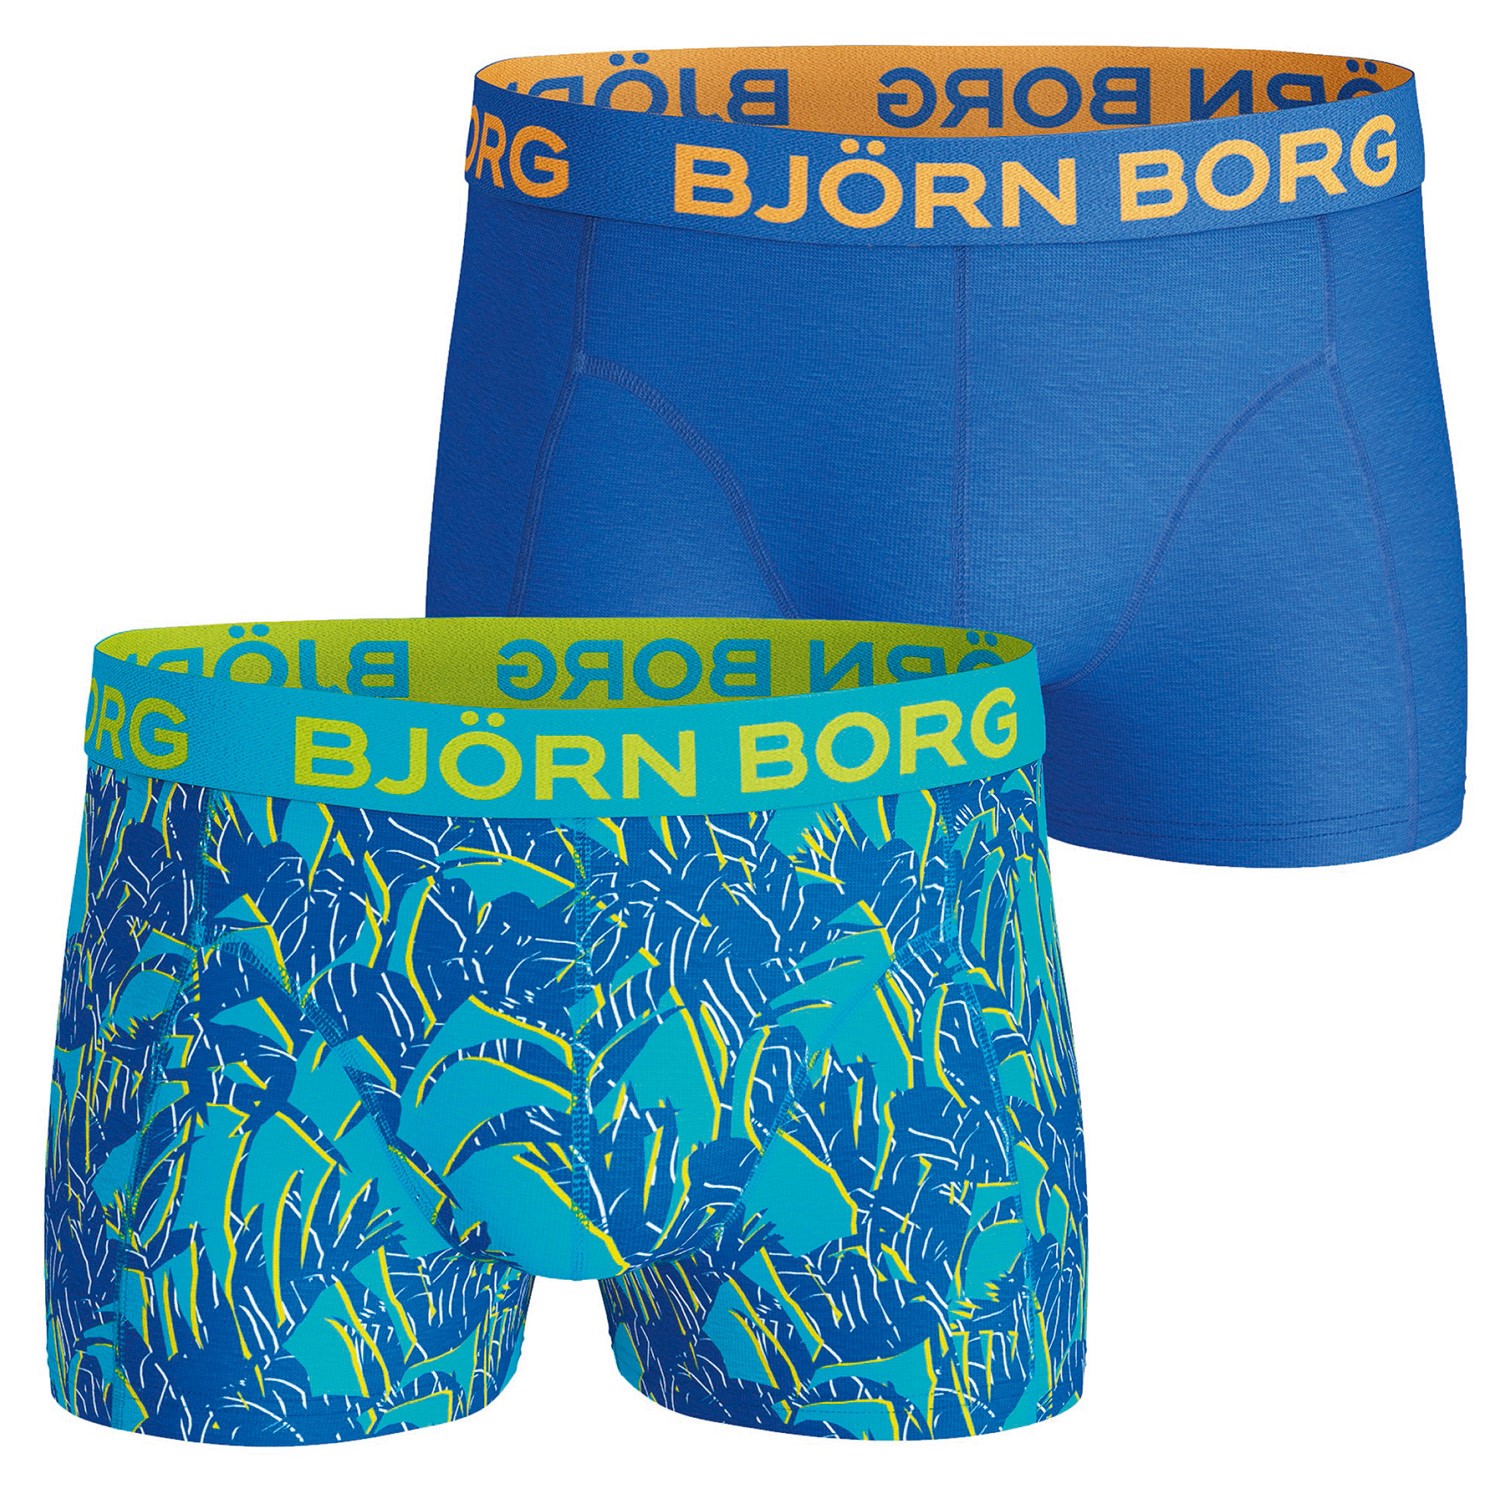 Björn Borg Short Shorts Topical